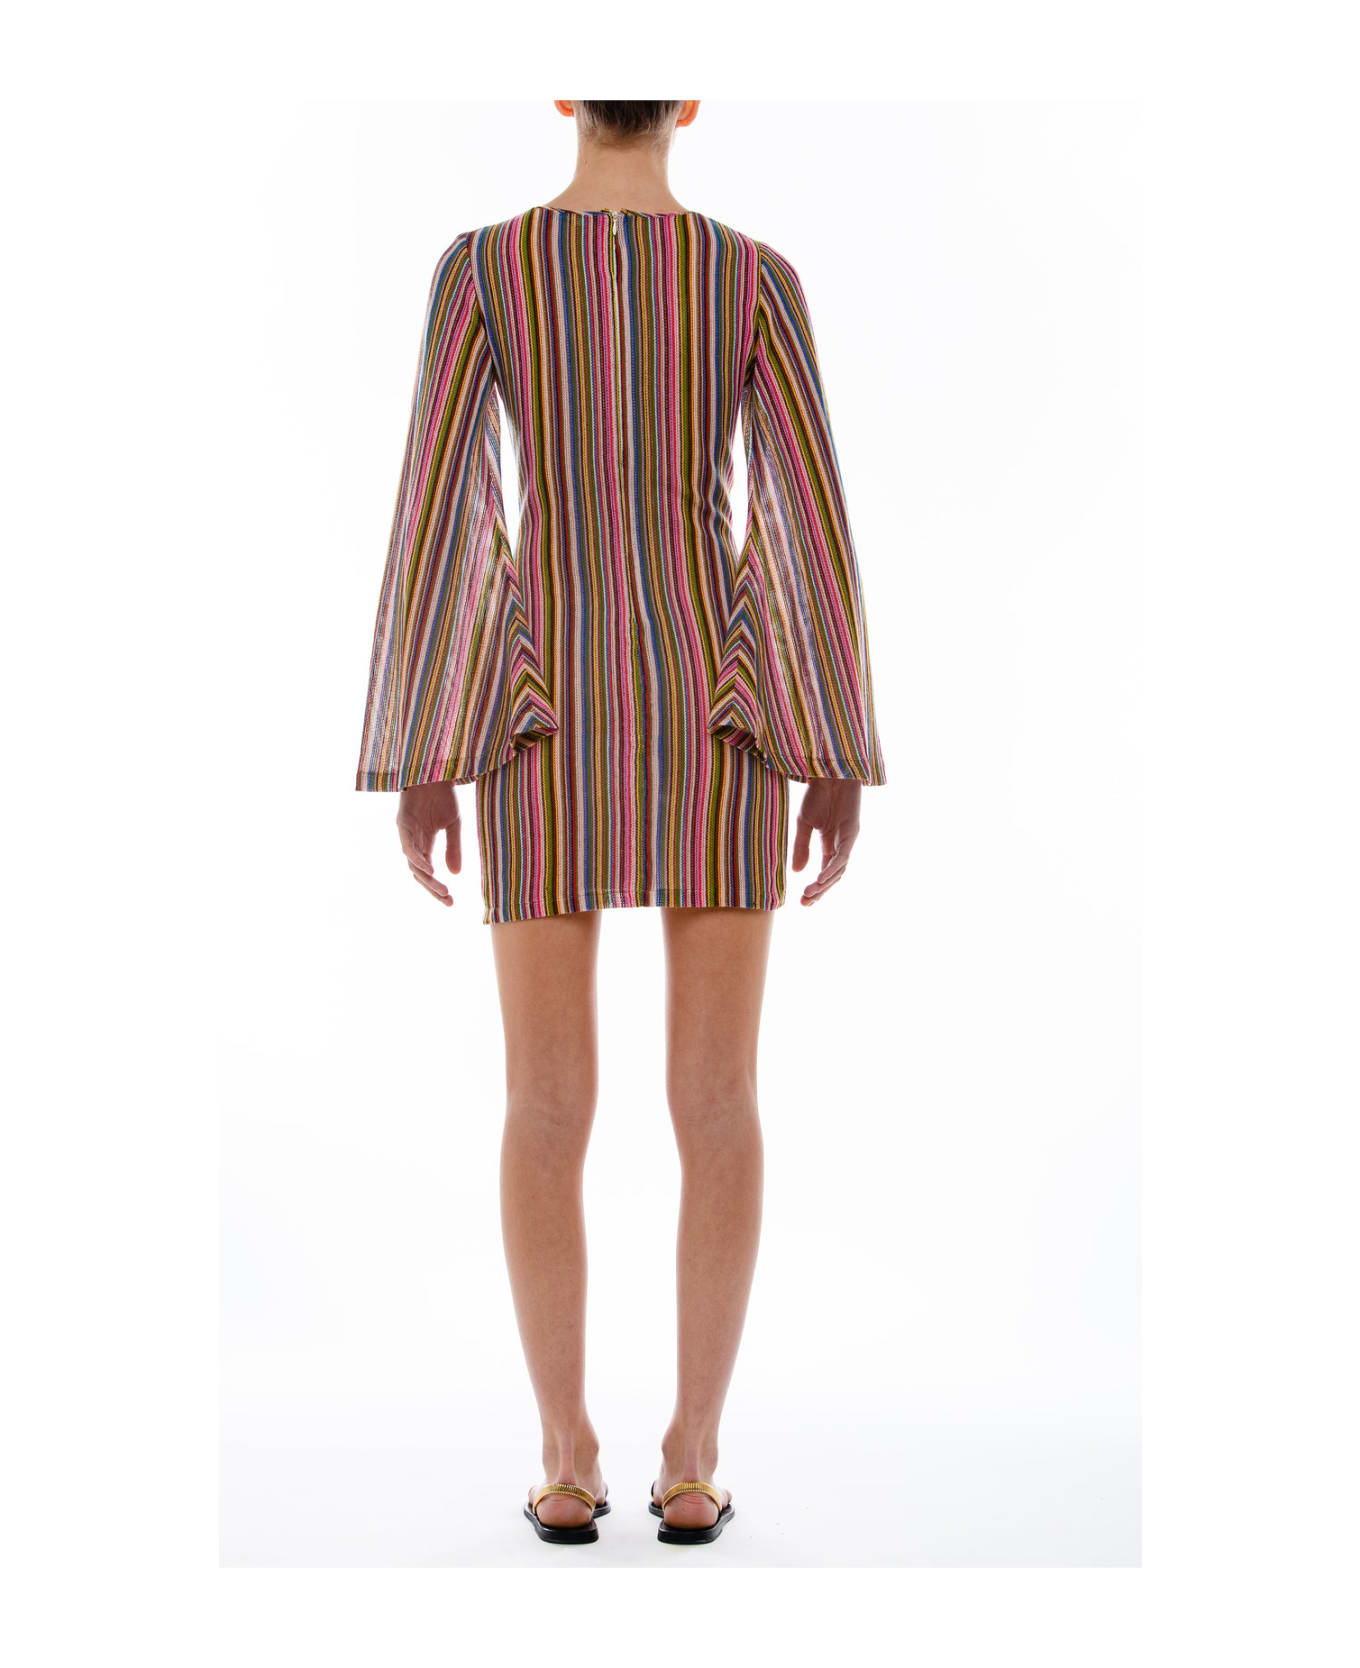 Amotea Courmayeur Dress Short In Multicolor Jersey - Multicolor